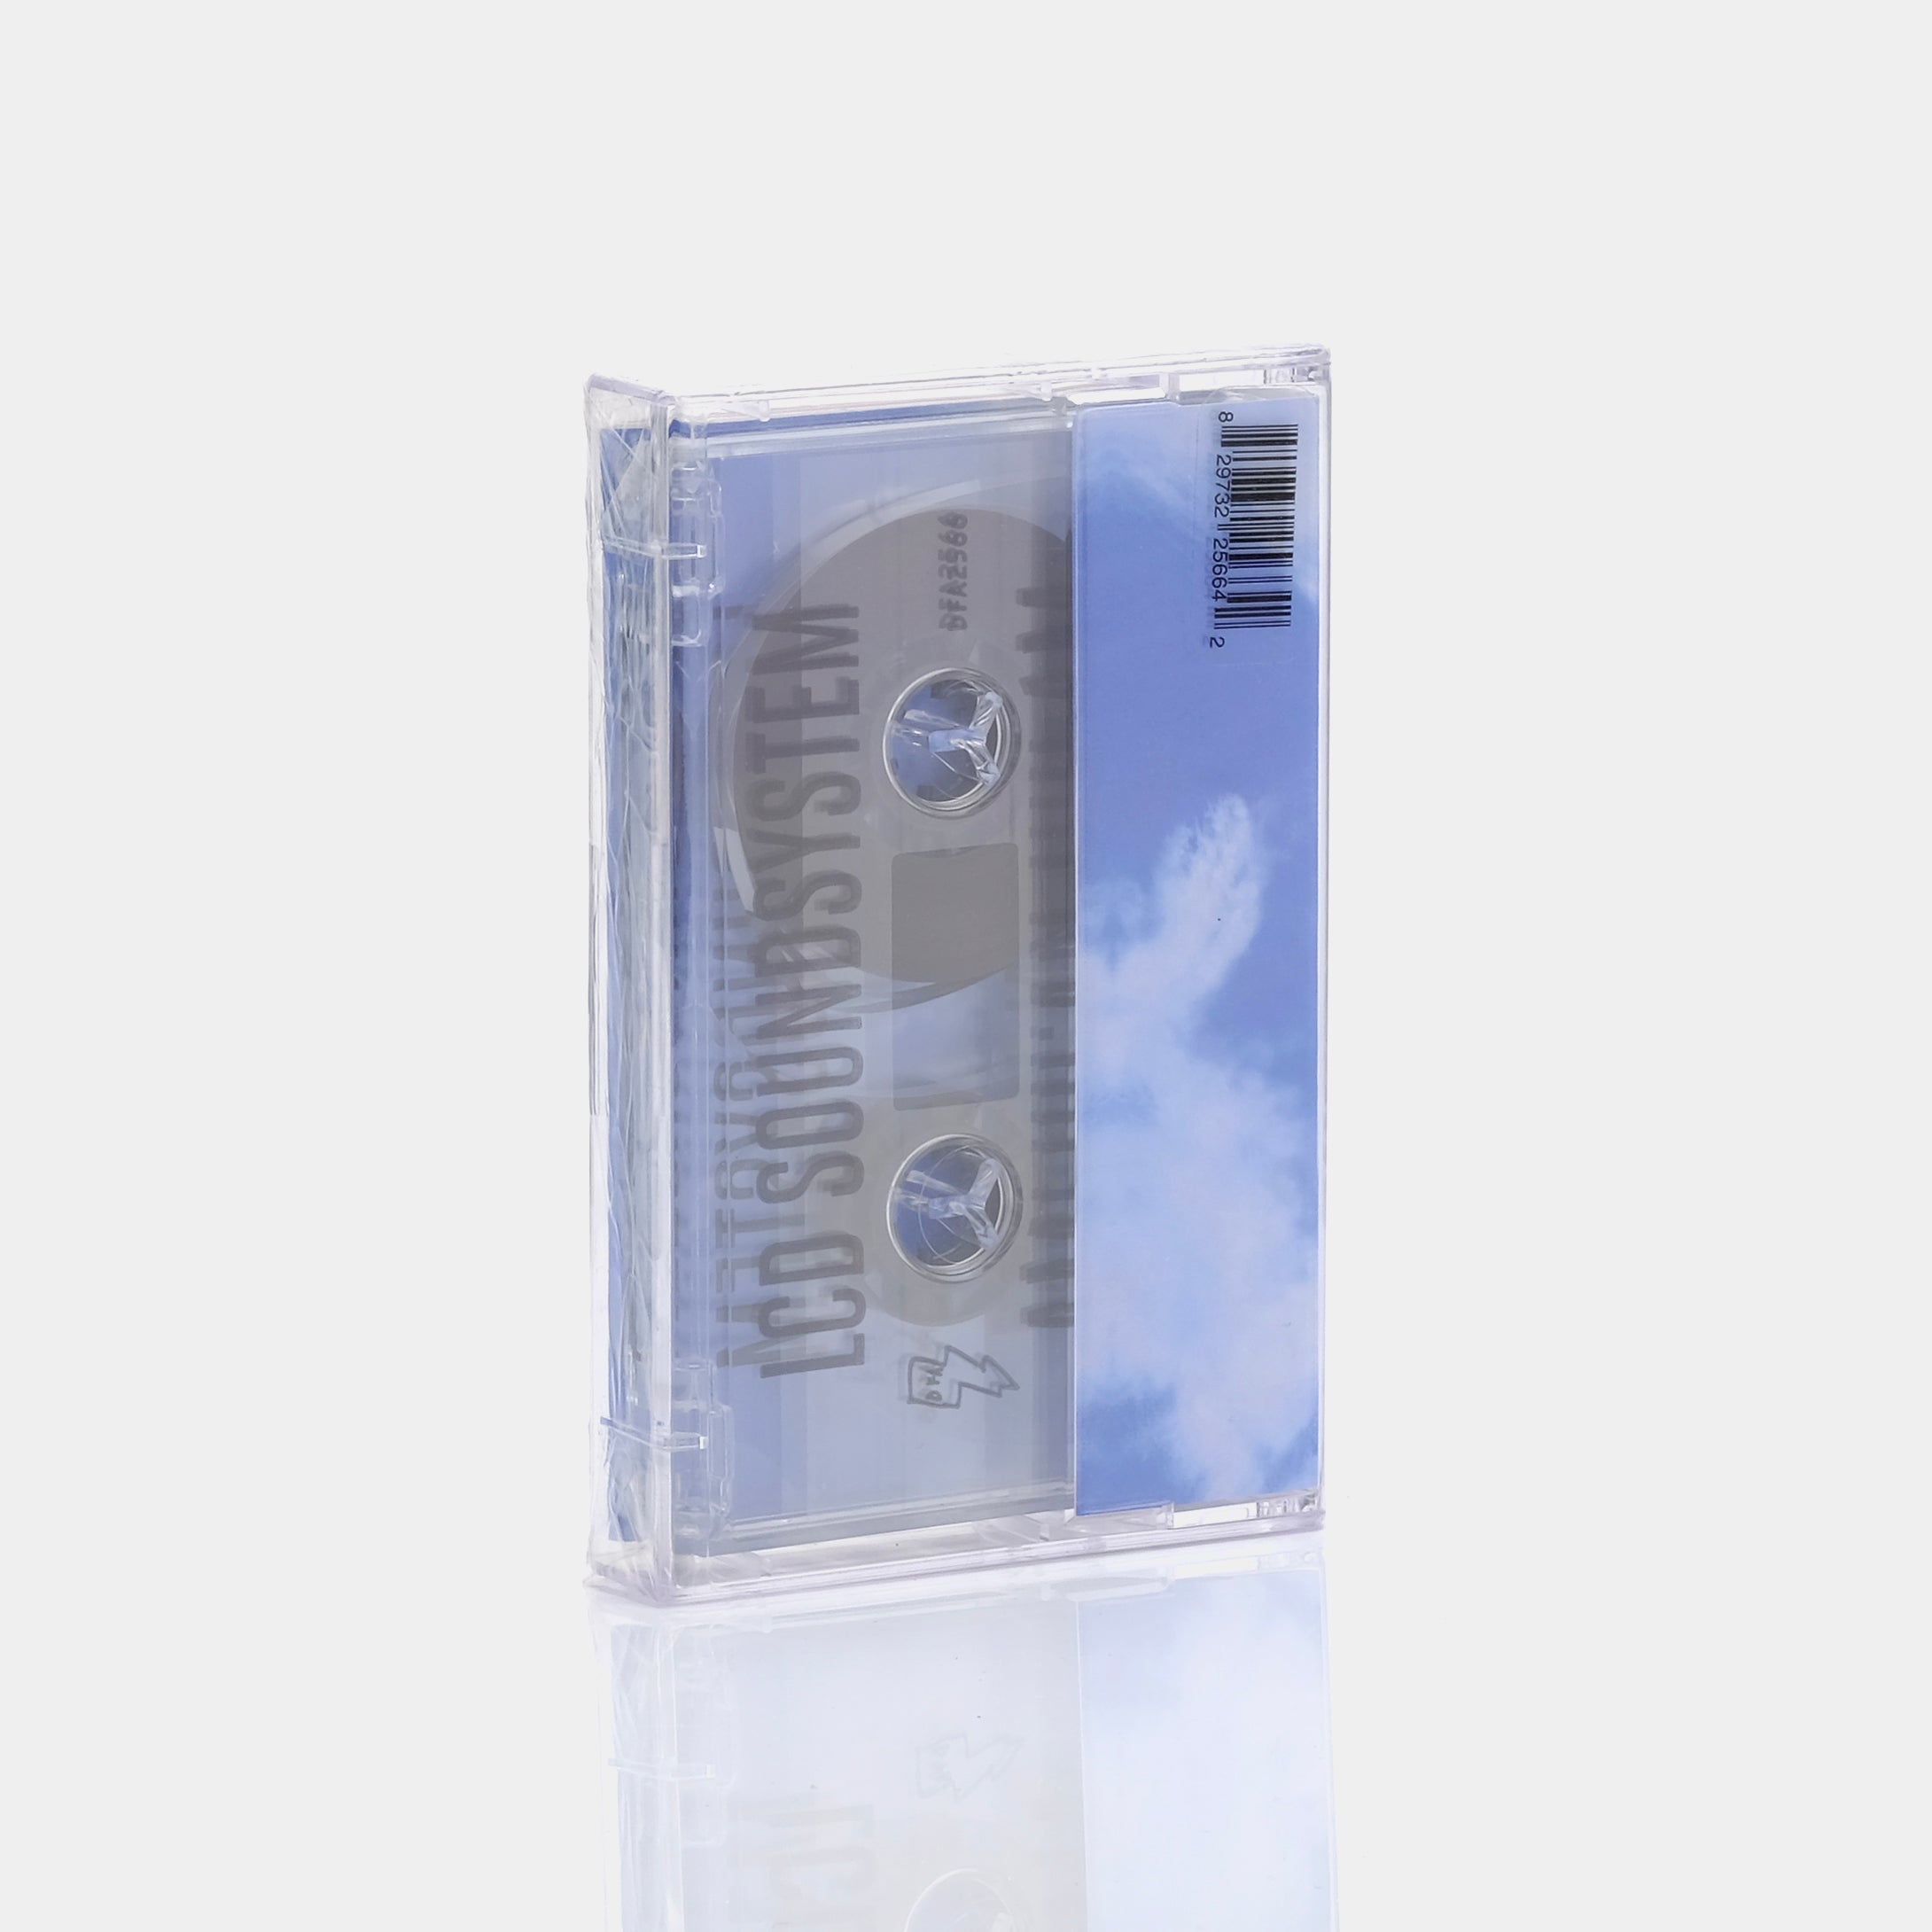 LCD Soundsystem - American Dream Cassette Tape